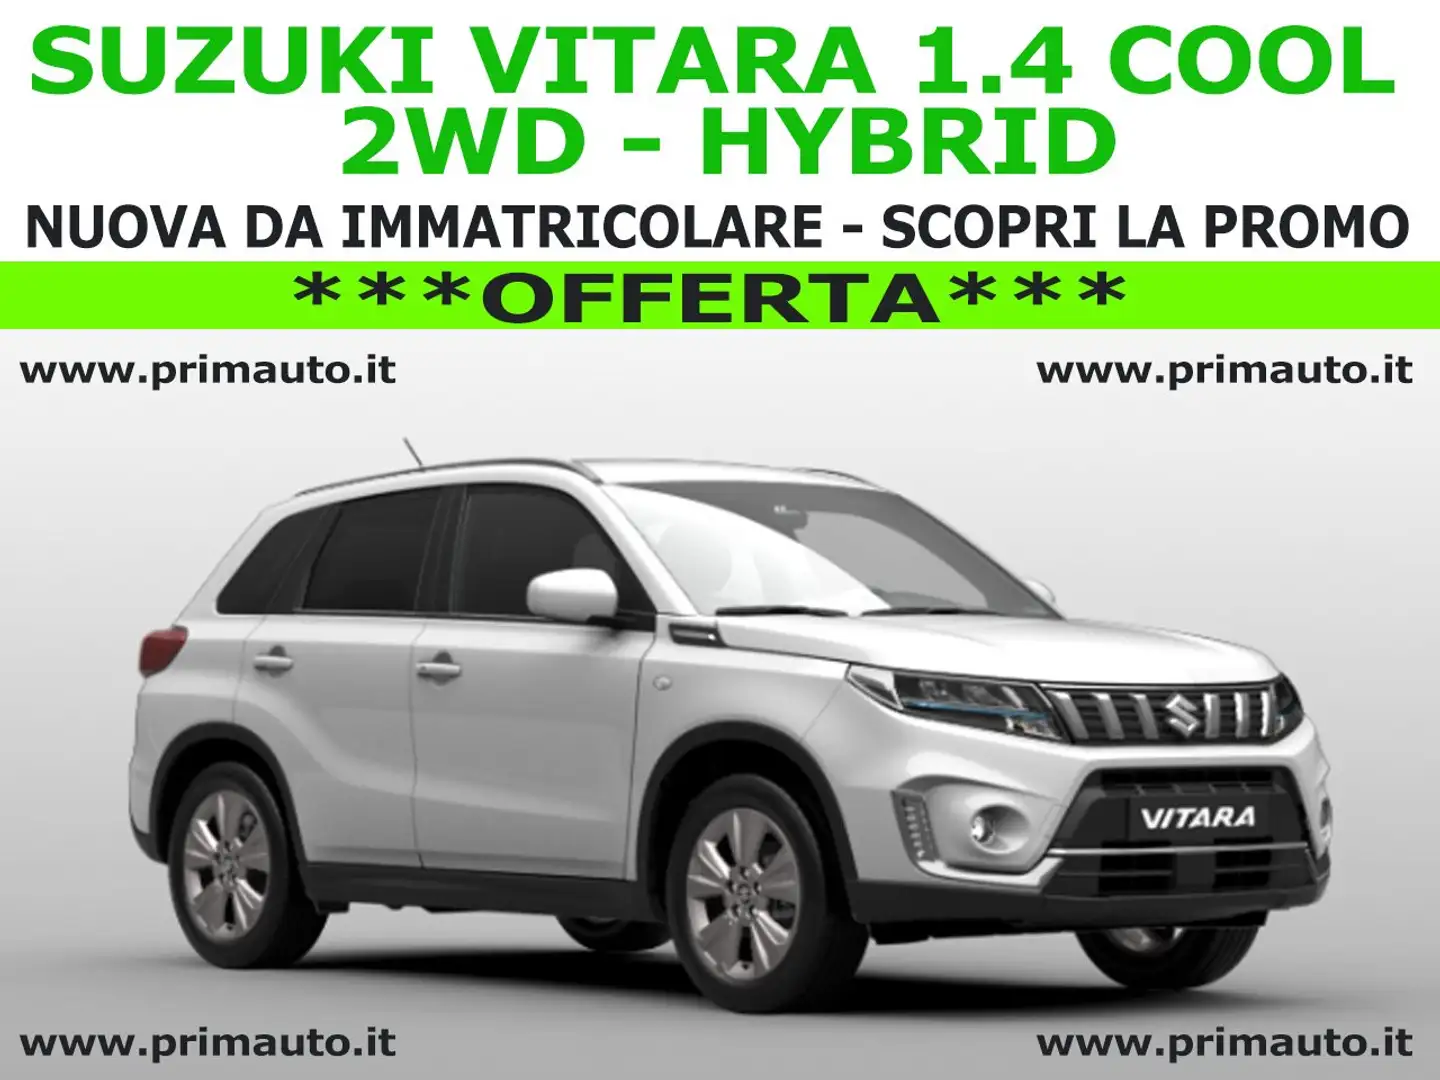 Suzuki Vitara 1.4 Hybrid Cool - OFFERTA - (#0424)...SCOPRILA! Bianco - 1